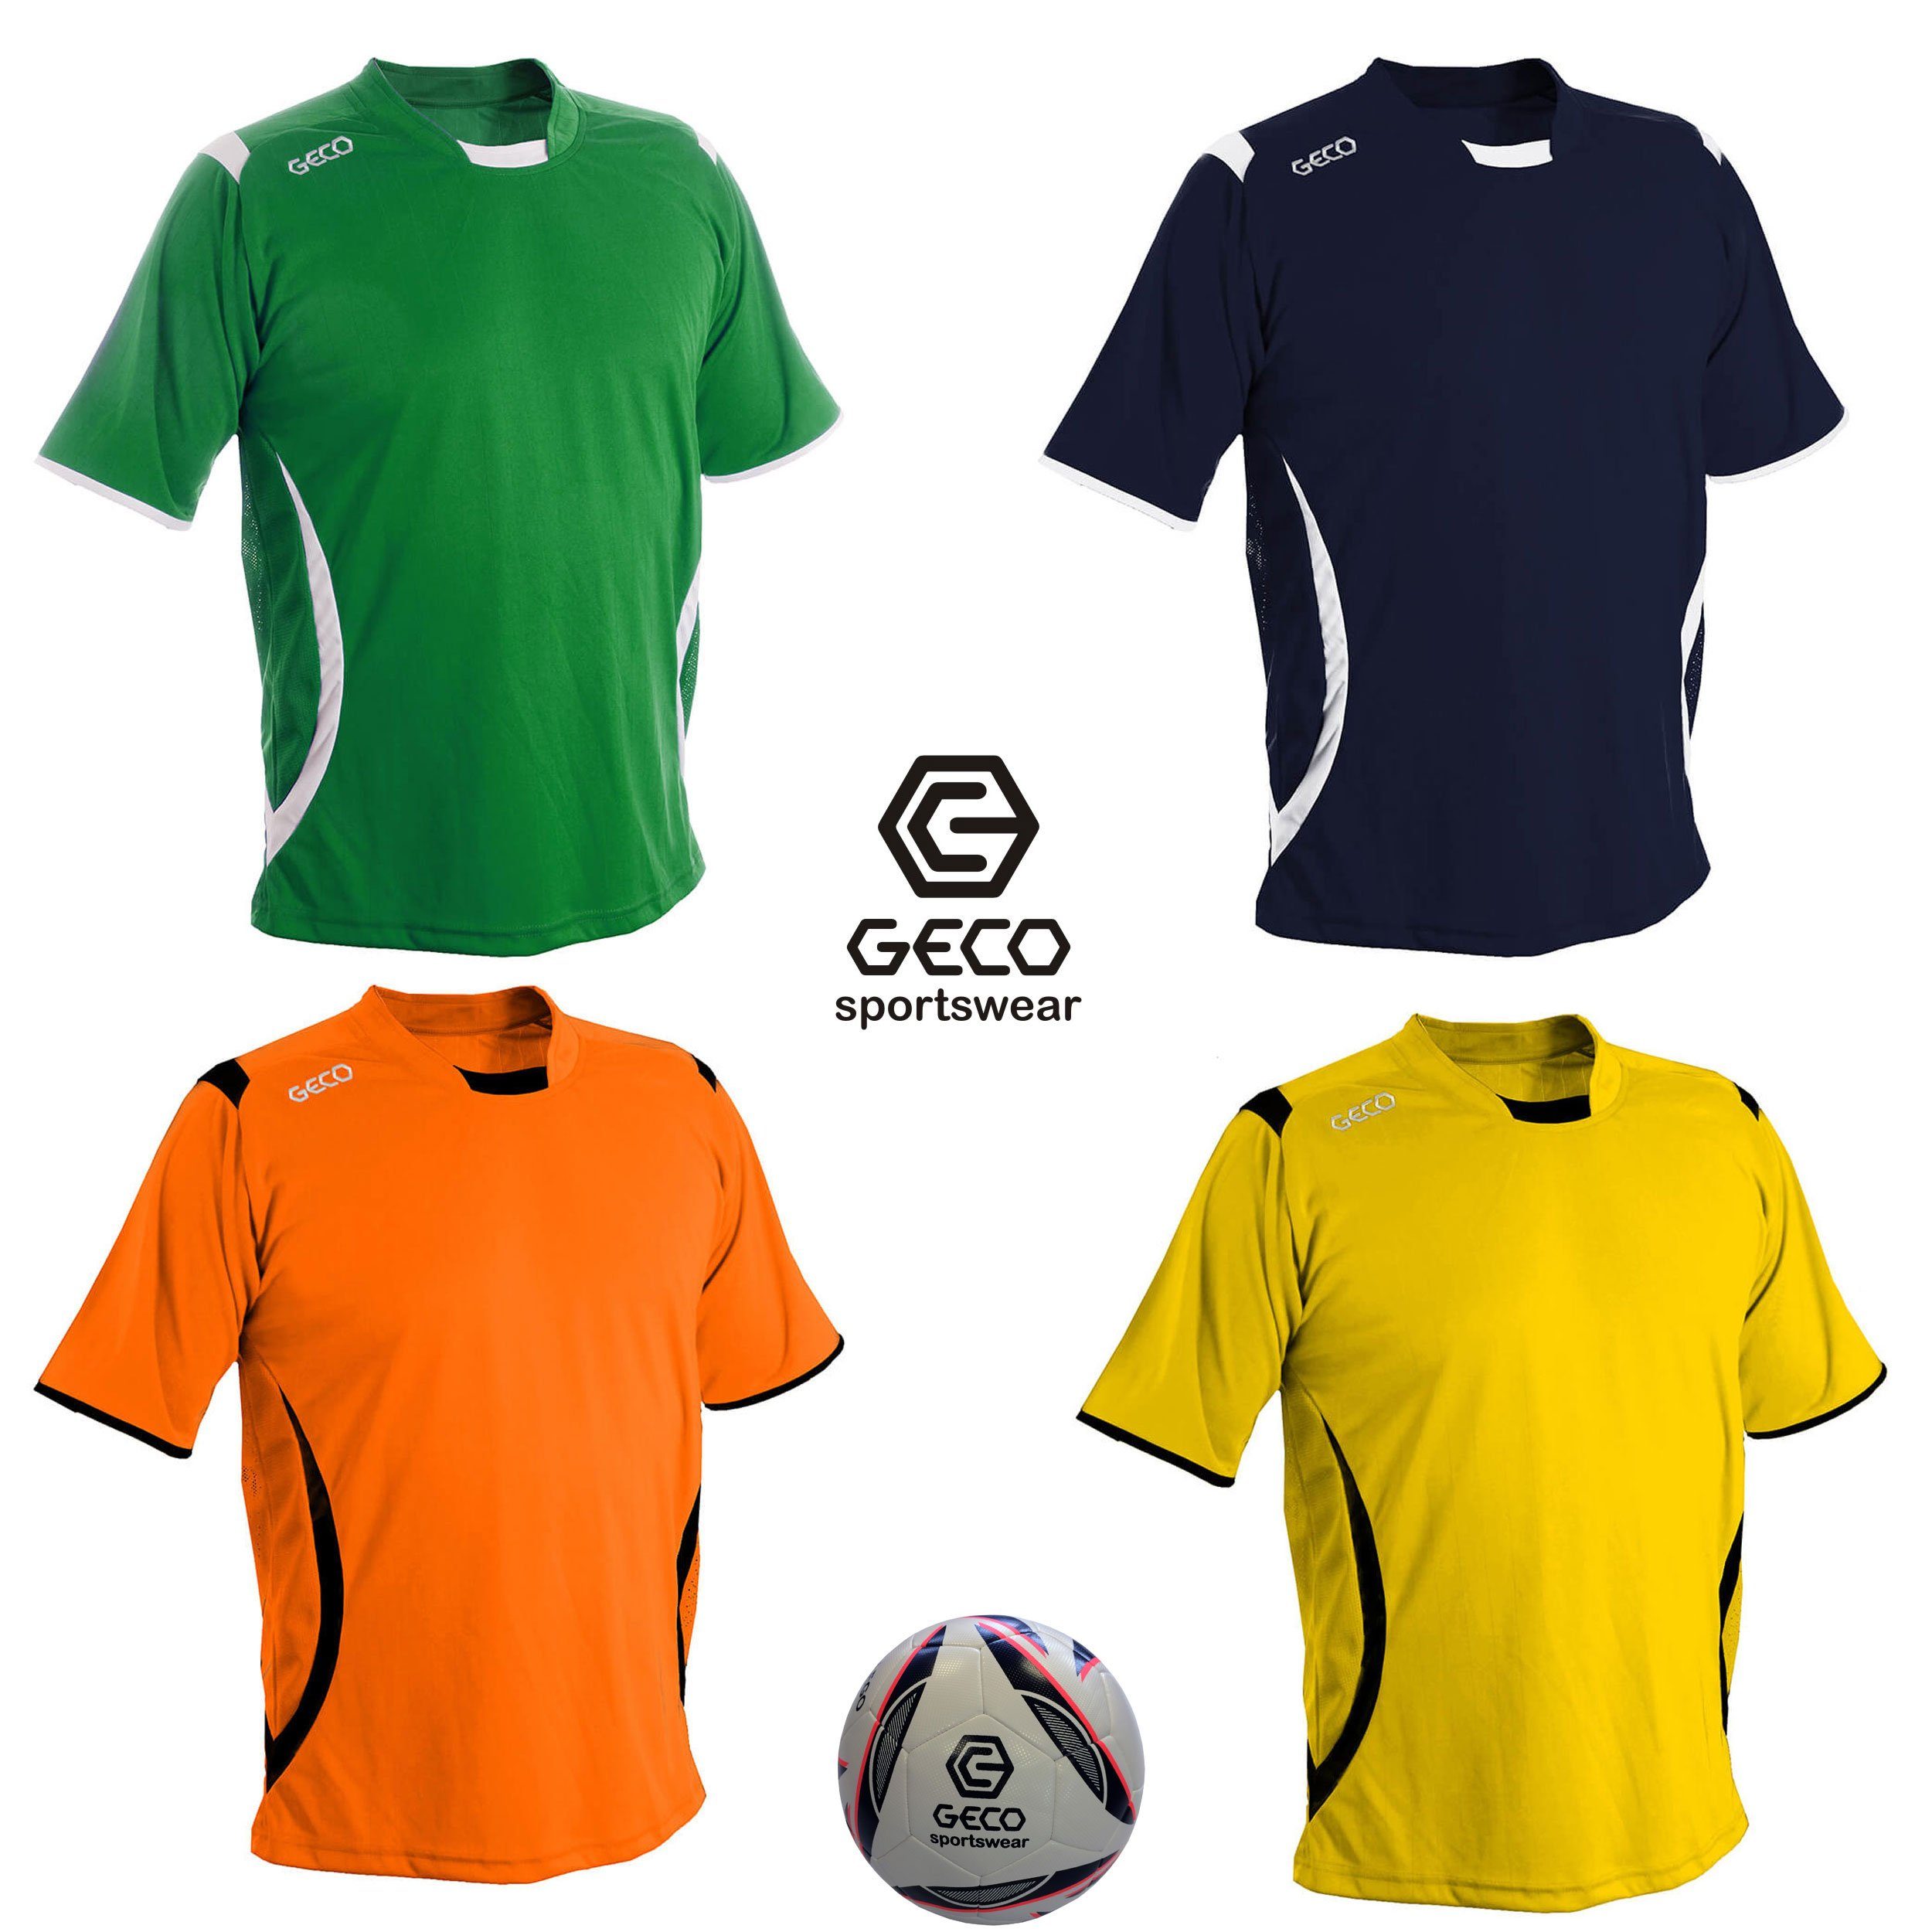 Geco Sportswear Fußballtrikot Fußballtrikot Geco Fußball Trikot Levante kurzarm zweifarbig seitliche Mesh Einsätze orange/schwarz